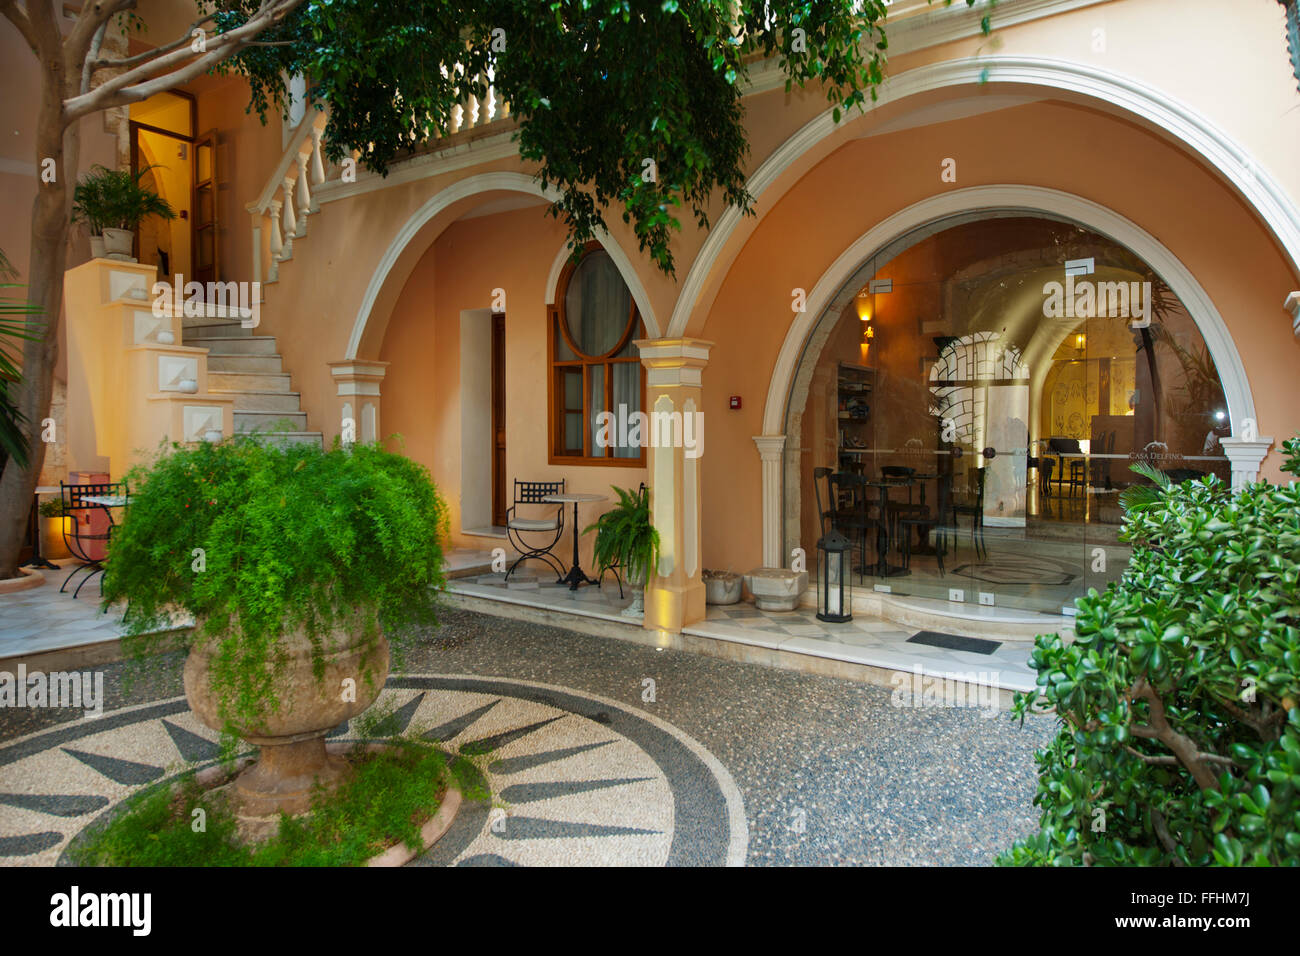 Spanien, Kreta, Chania, l'hôtel Casa Delfino einem alten venezianischen Palast aus dem 17. Jahrhundert Banque D'Images